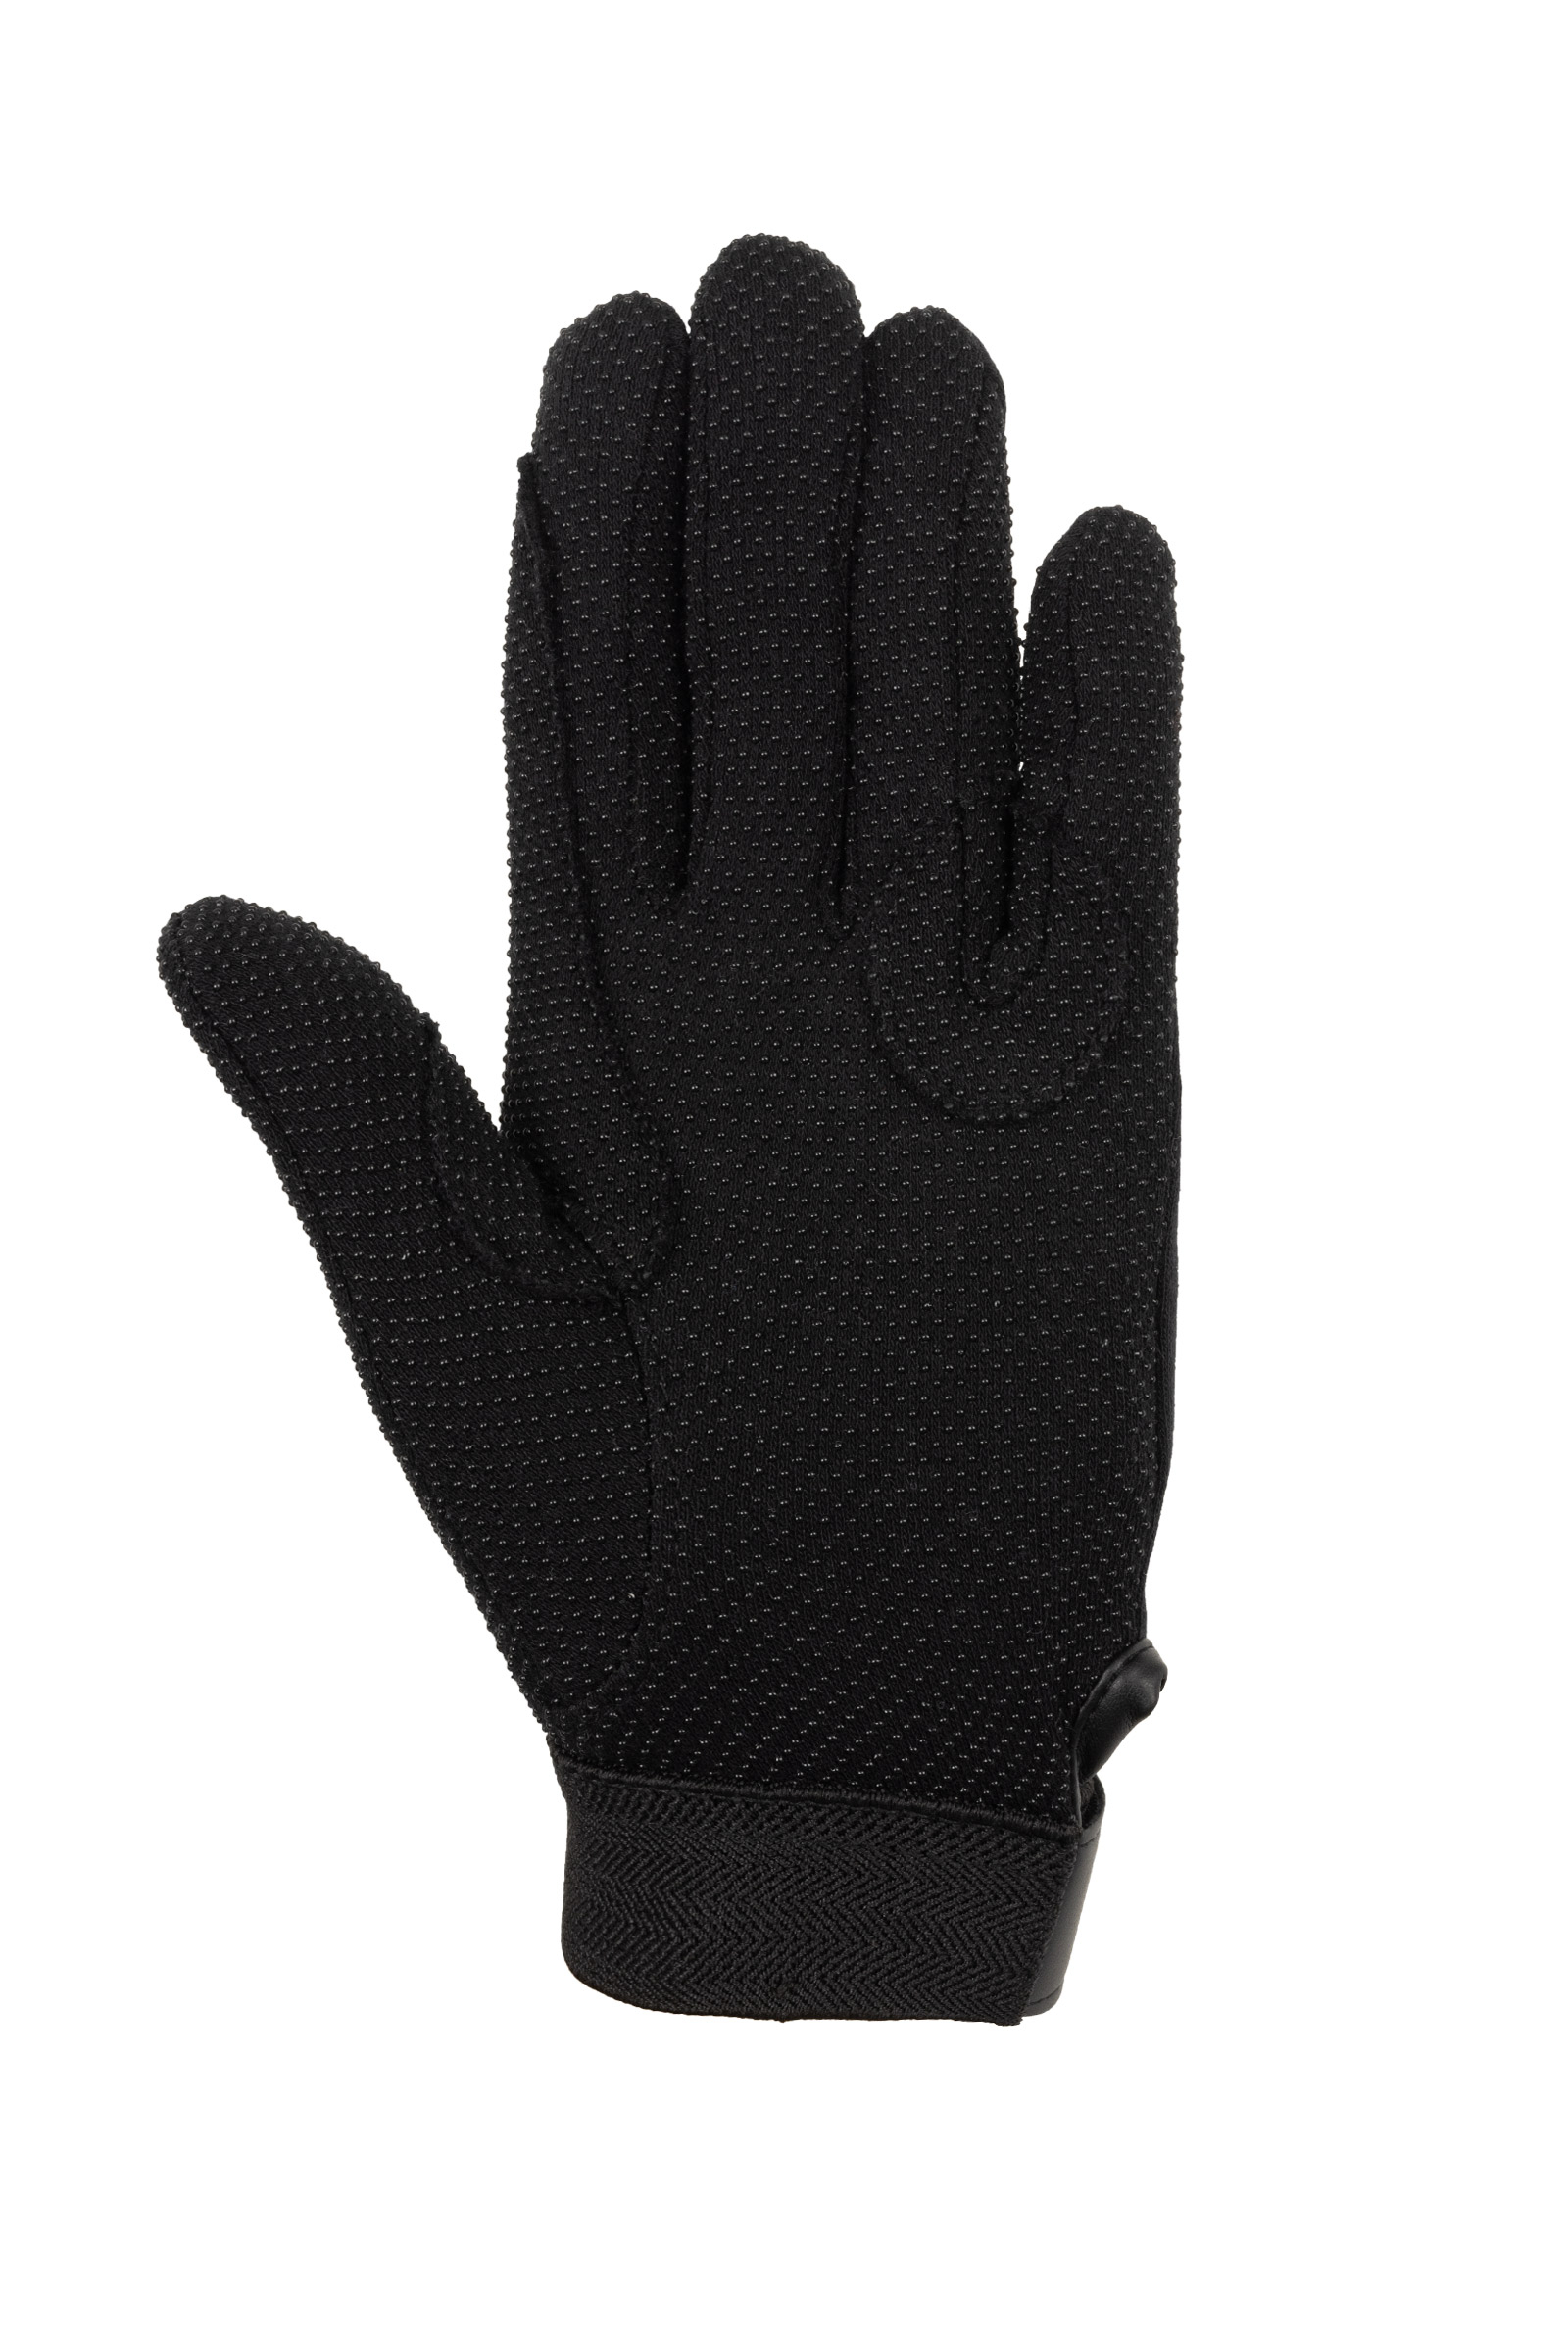 Training gloves Under Armour UNISEX GRIPPY GLOVES black